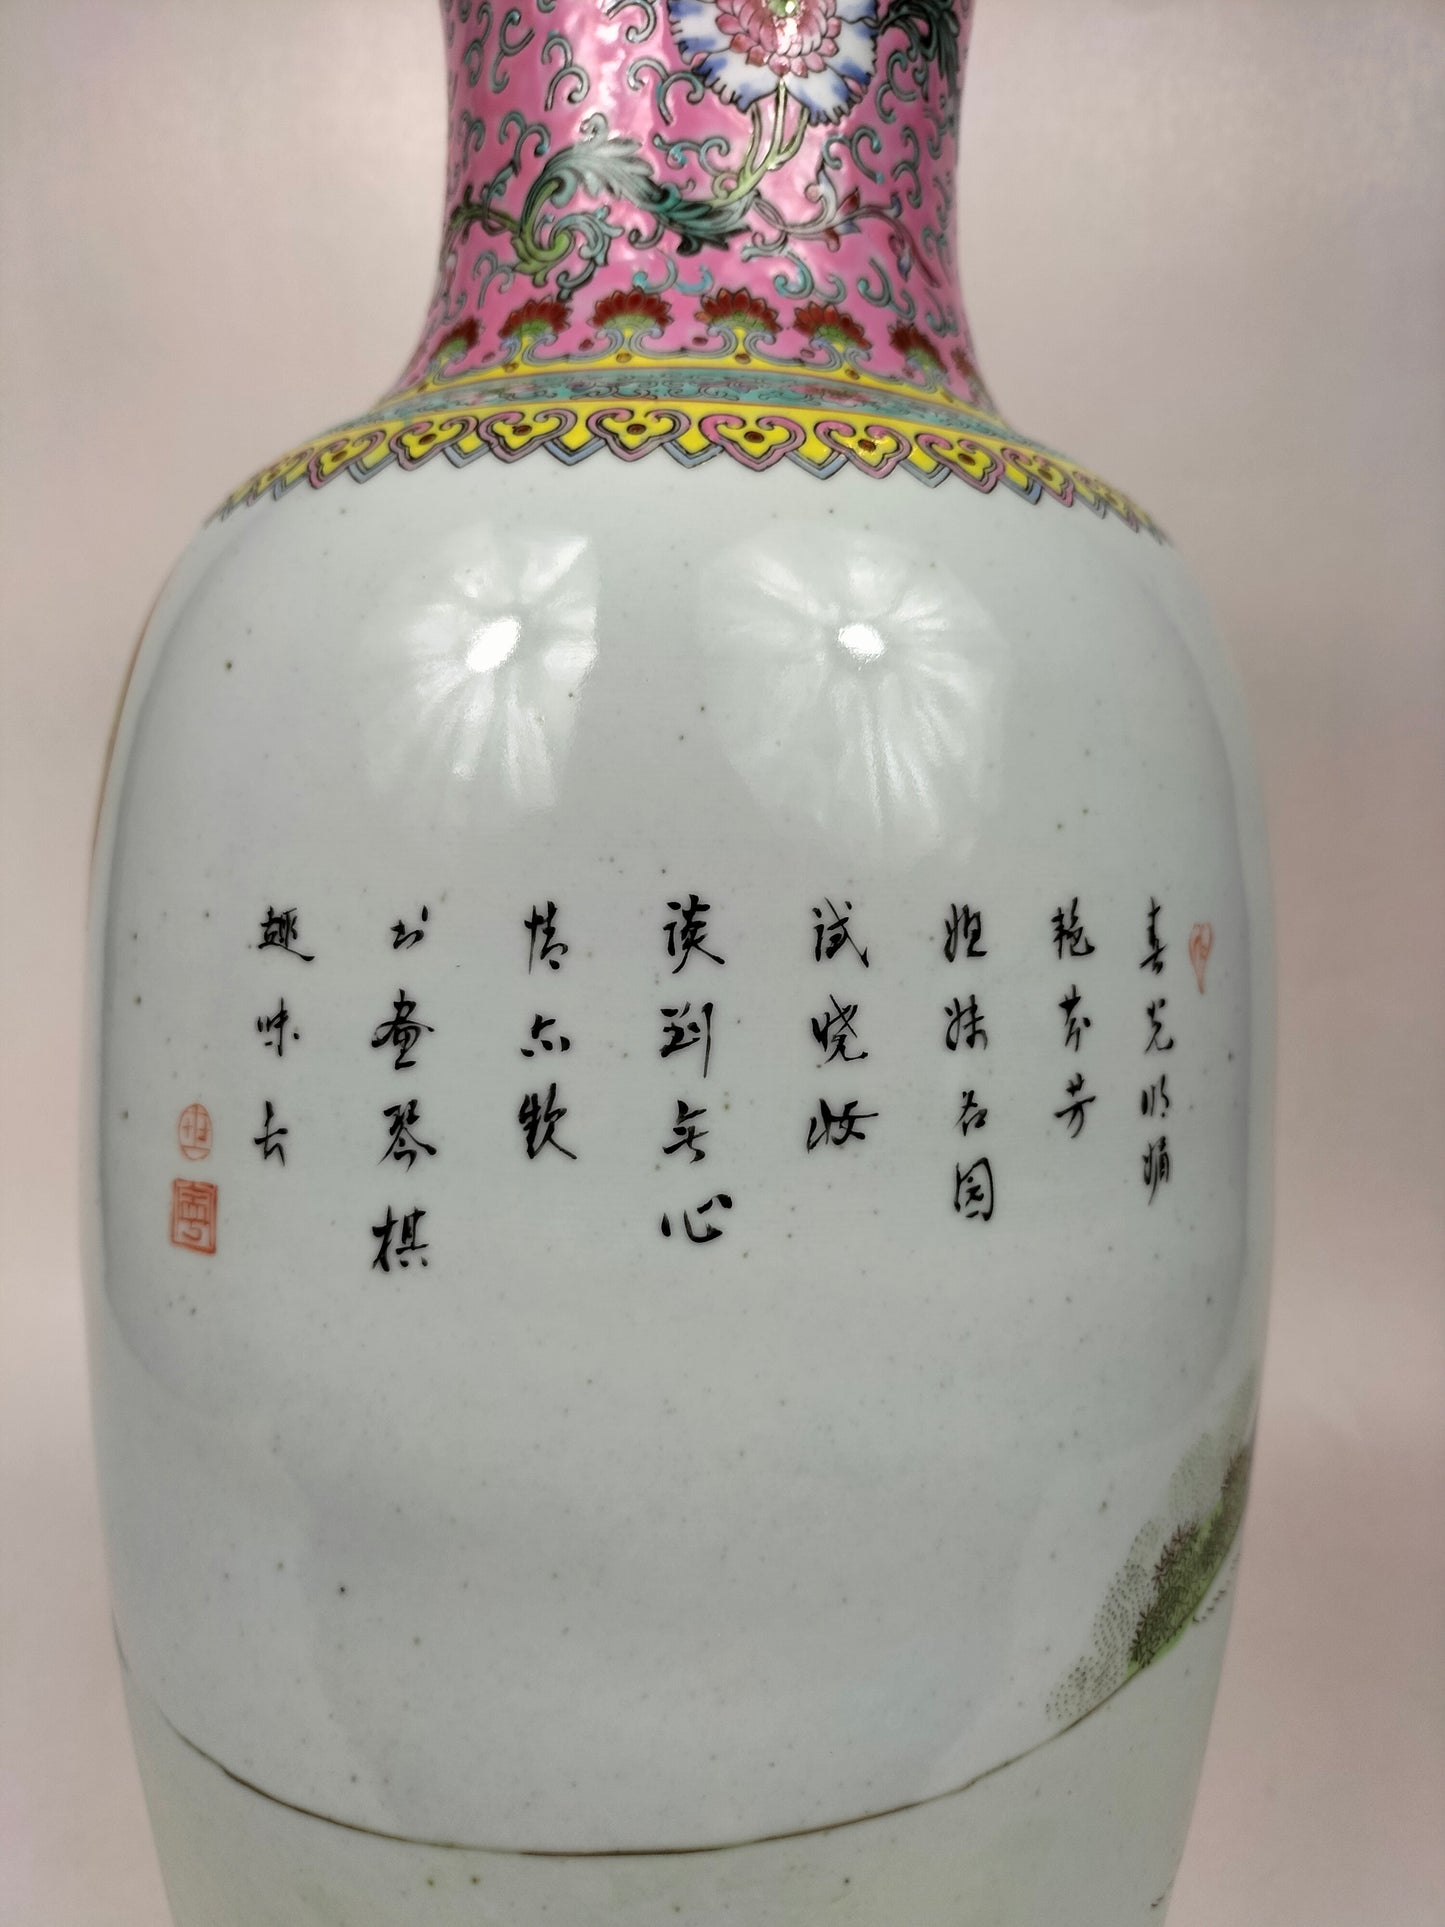 带有花园场景的大型中国粉彩花瓶 // 景德镇 - 20 世纪